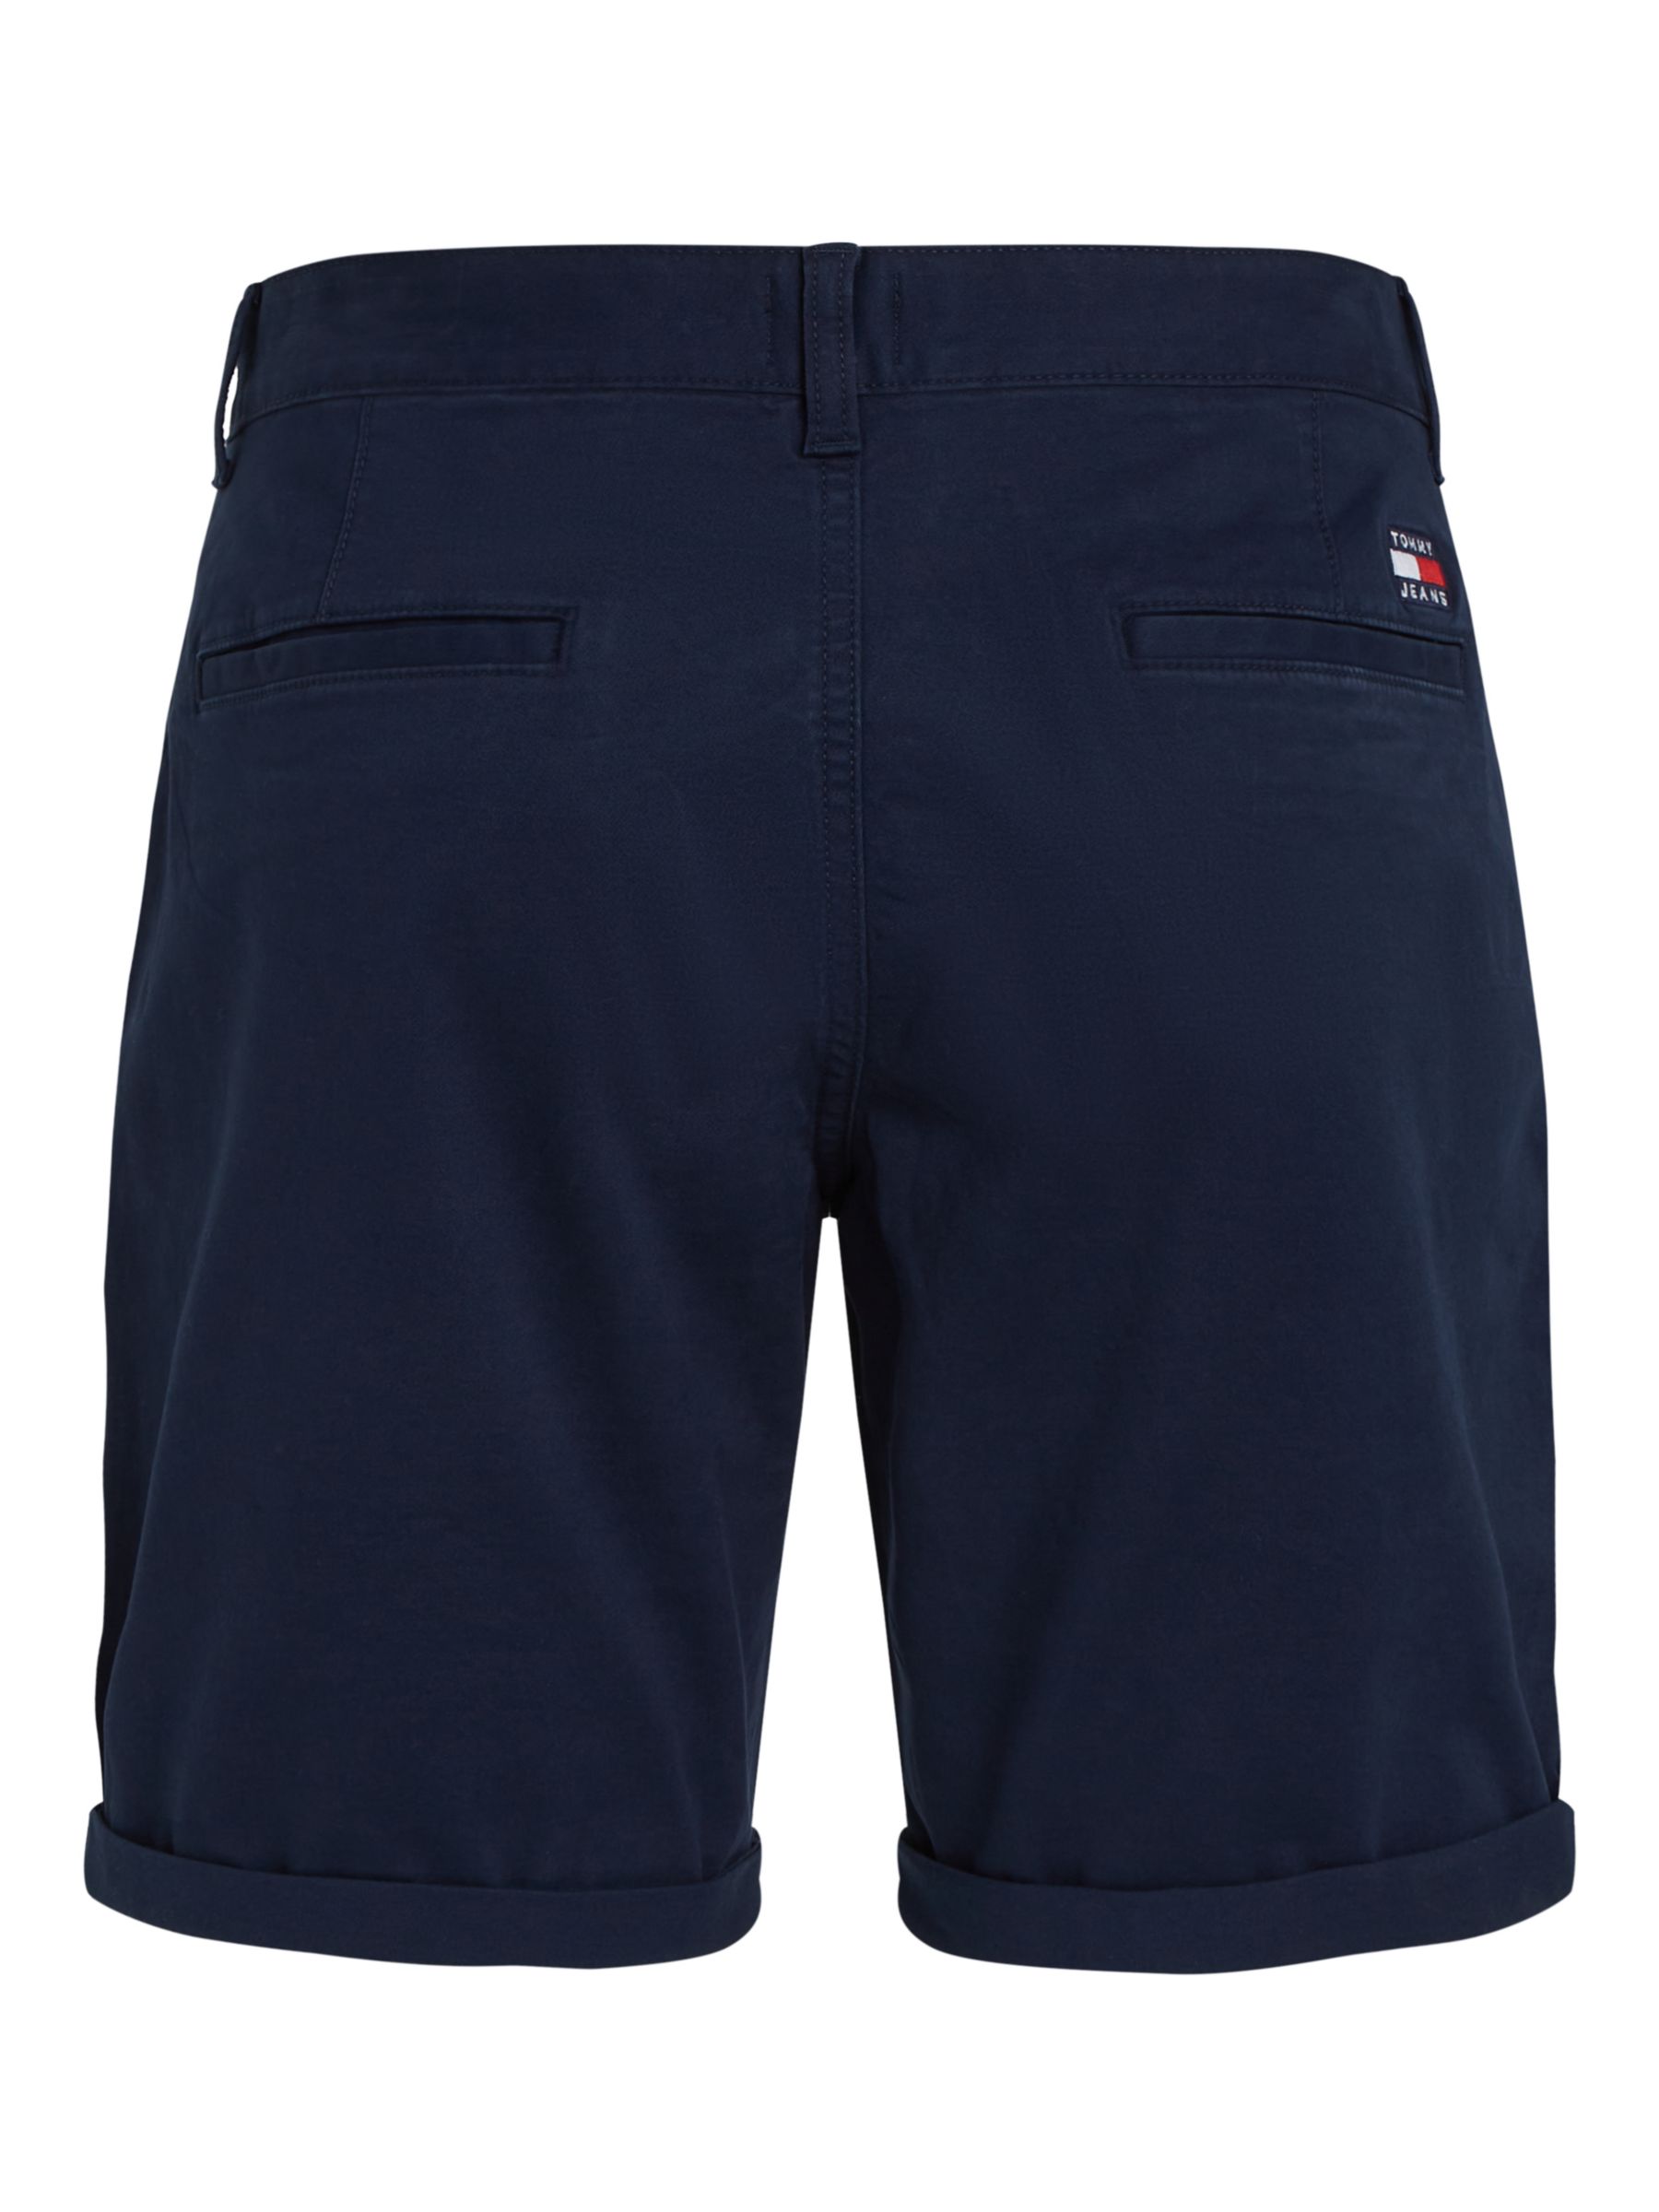 Tommy Jeans Scanton Chino Shorts, Dark Night Navy, 30R